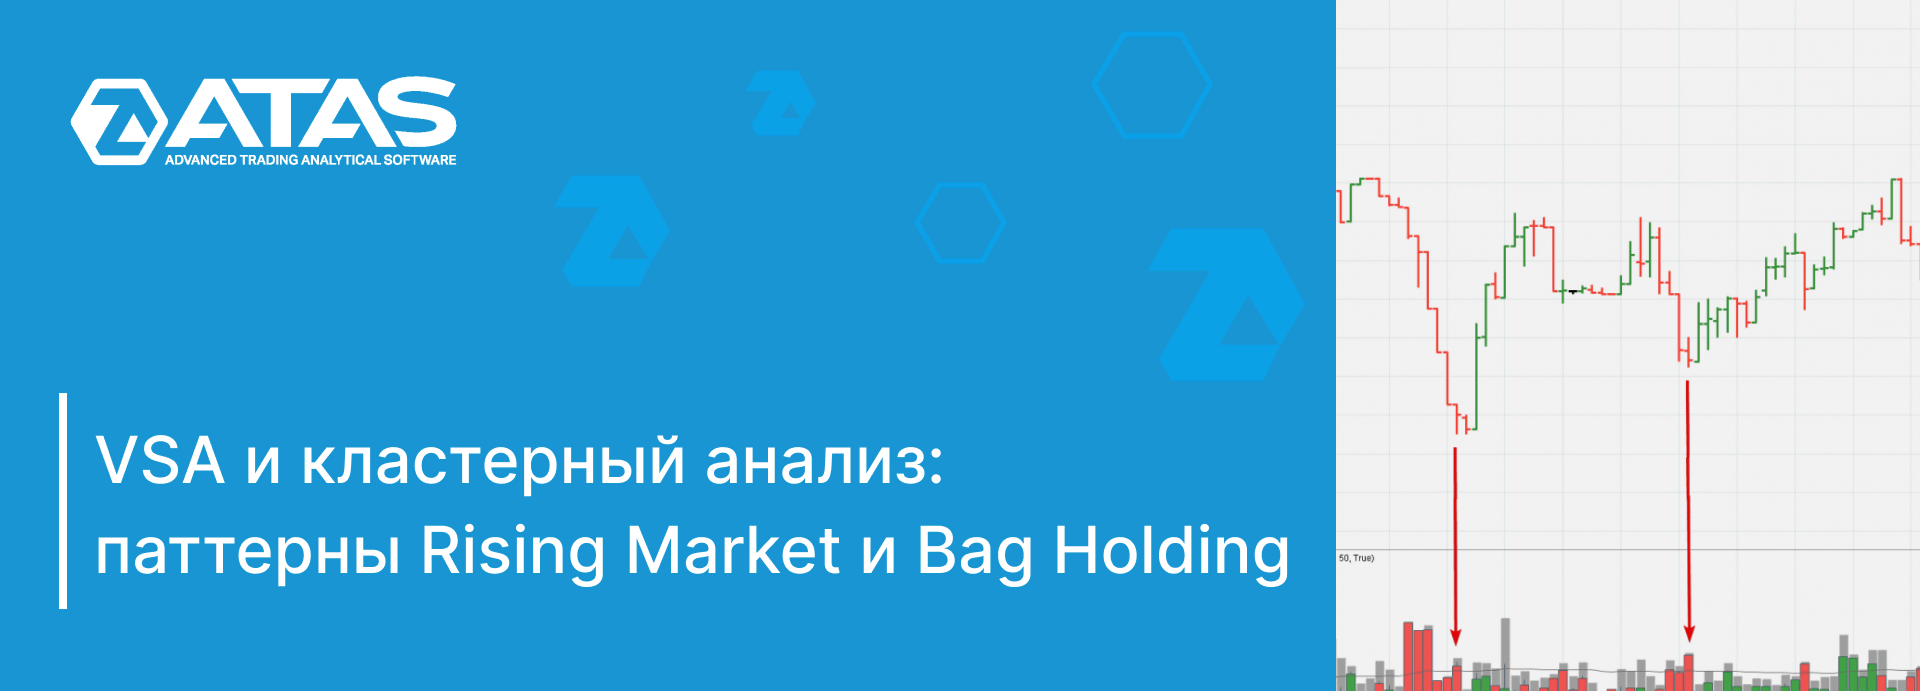 Паттерны Rising Market и Bag Holding